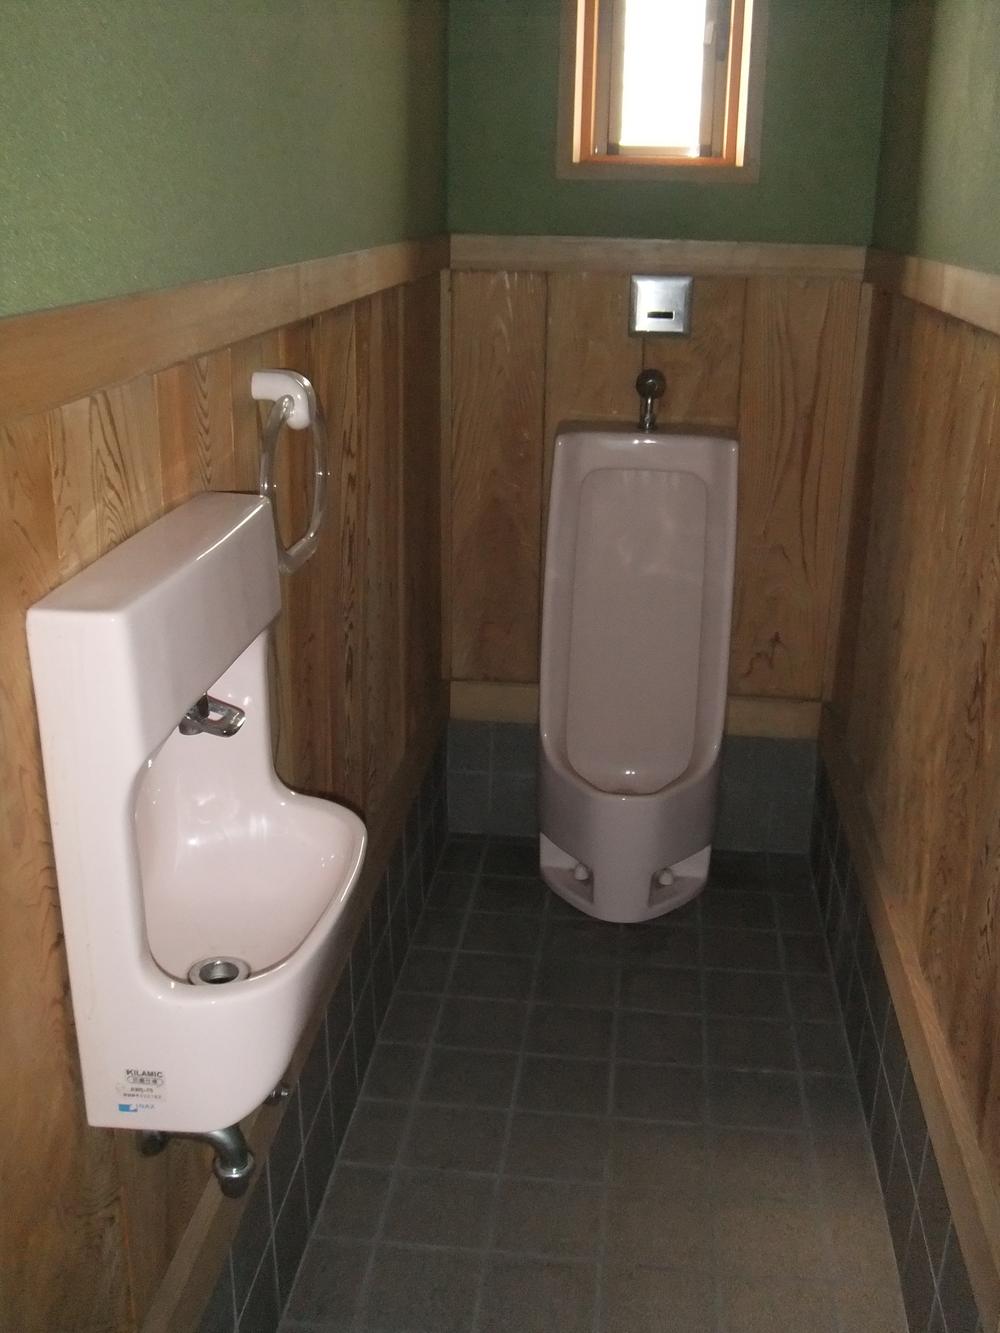 Toilet. First floor men's toilet